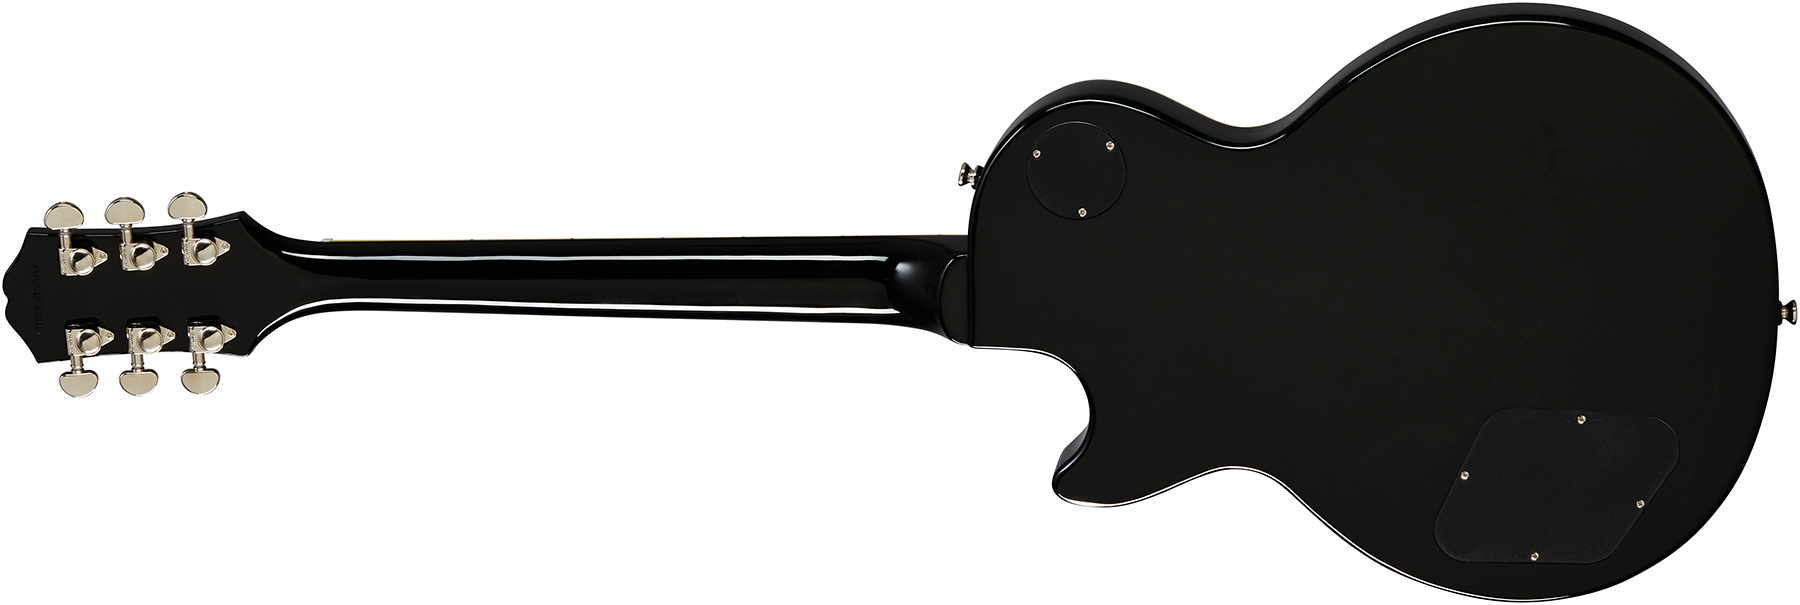 Epiphone Les Paul Standard 60s 2h Ht Rw - Ebony - Guitarra eléctrica de corte único. - Variation 1